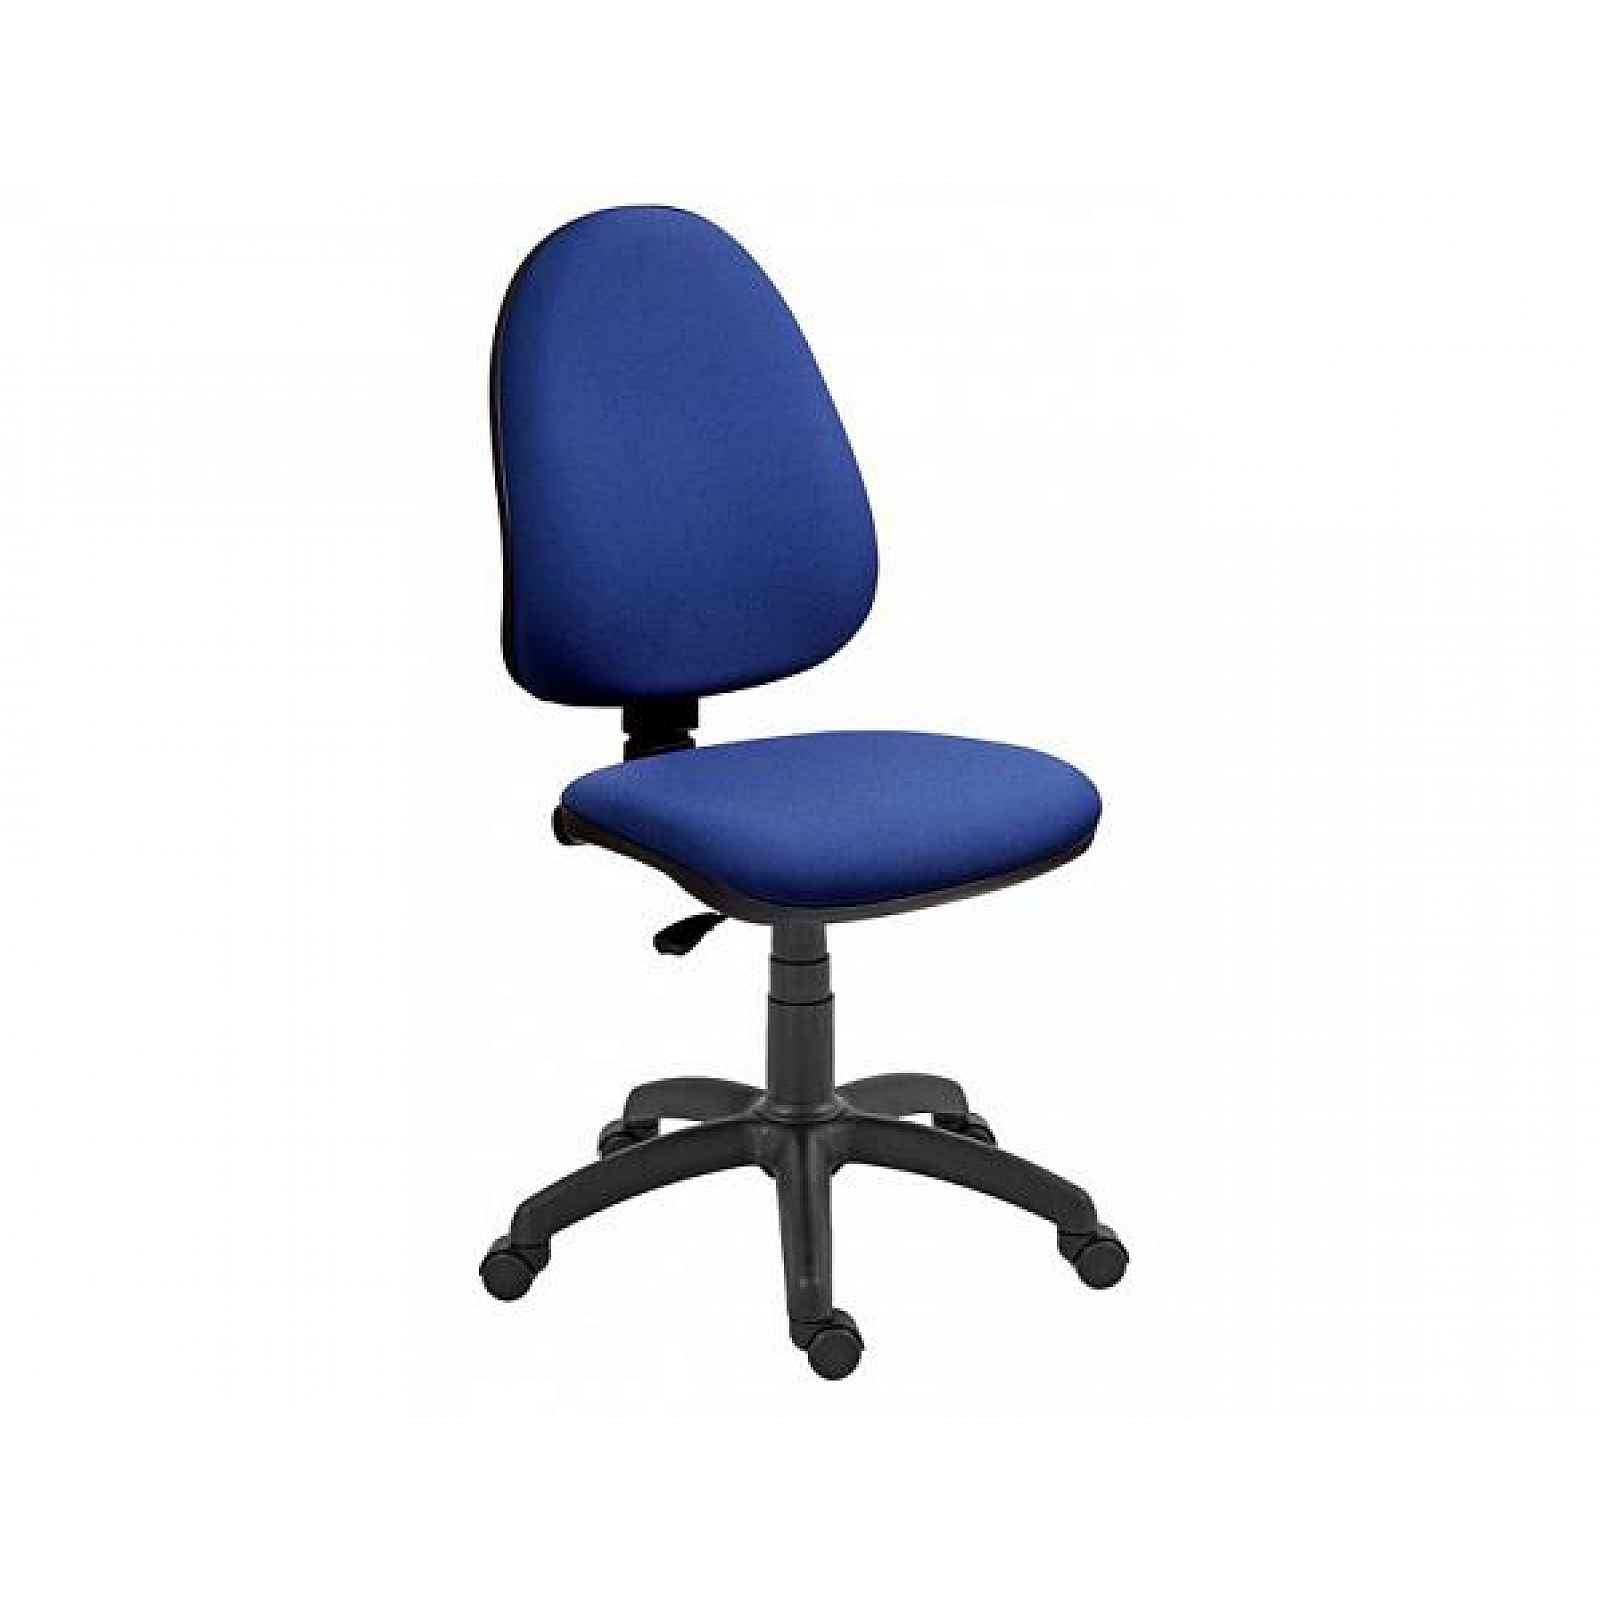 Kancelářská židle Panther modrá - 55 cm